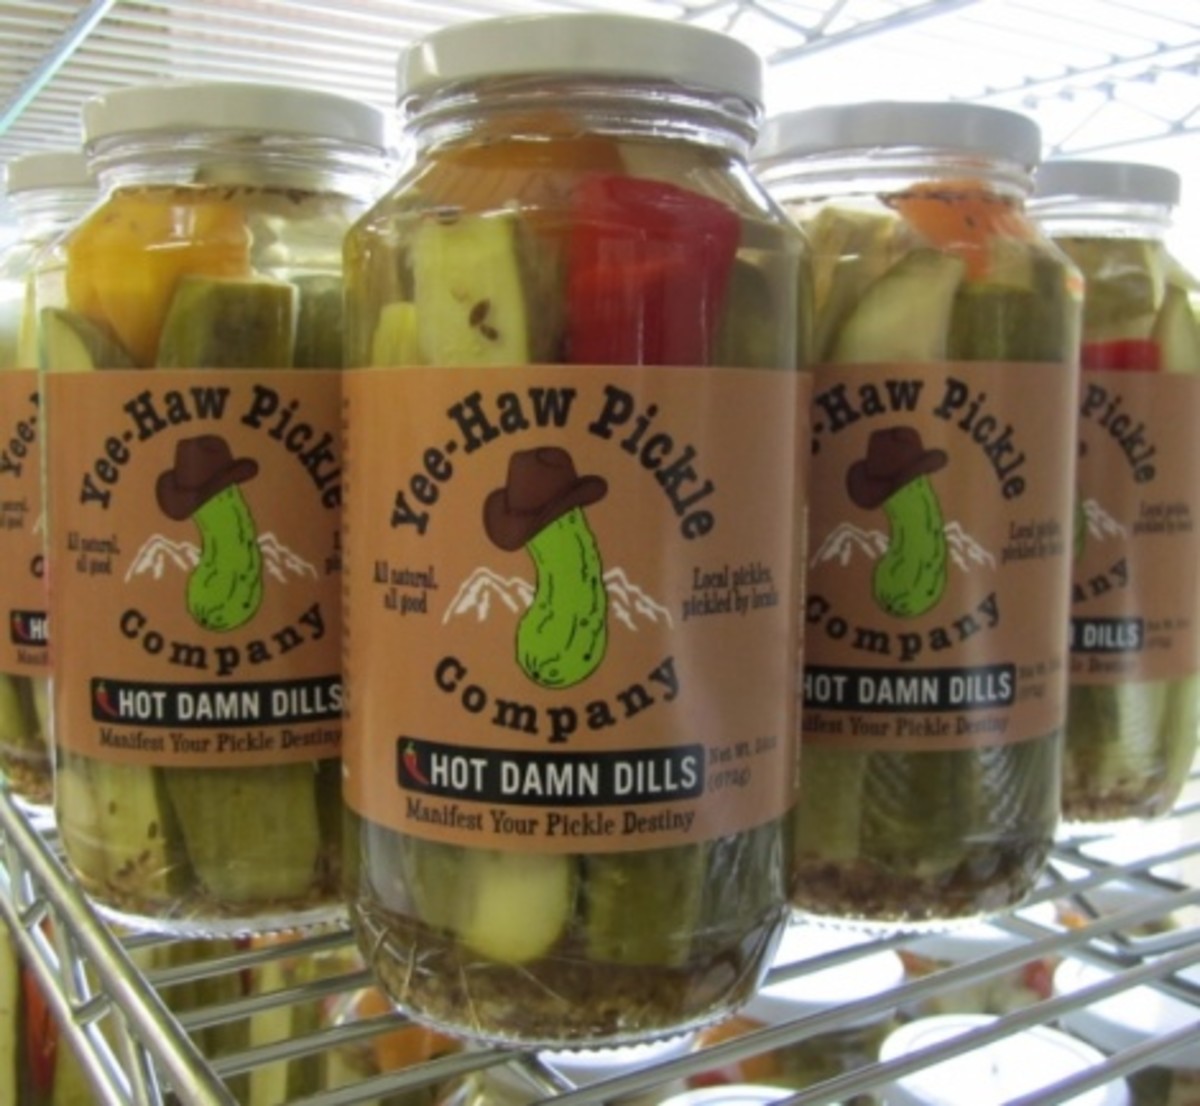 Yee-haw pickles